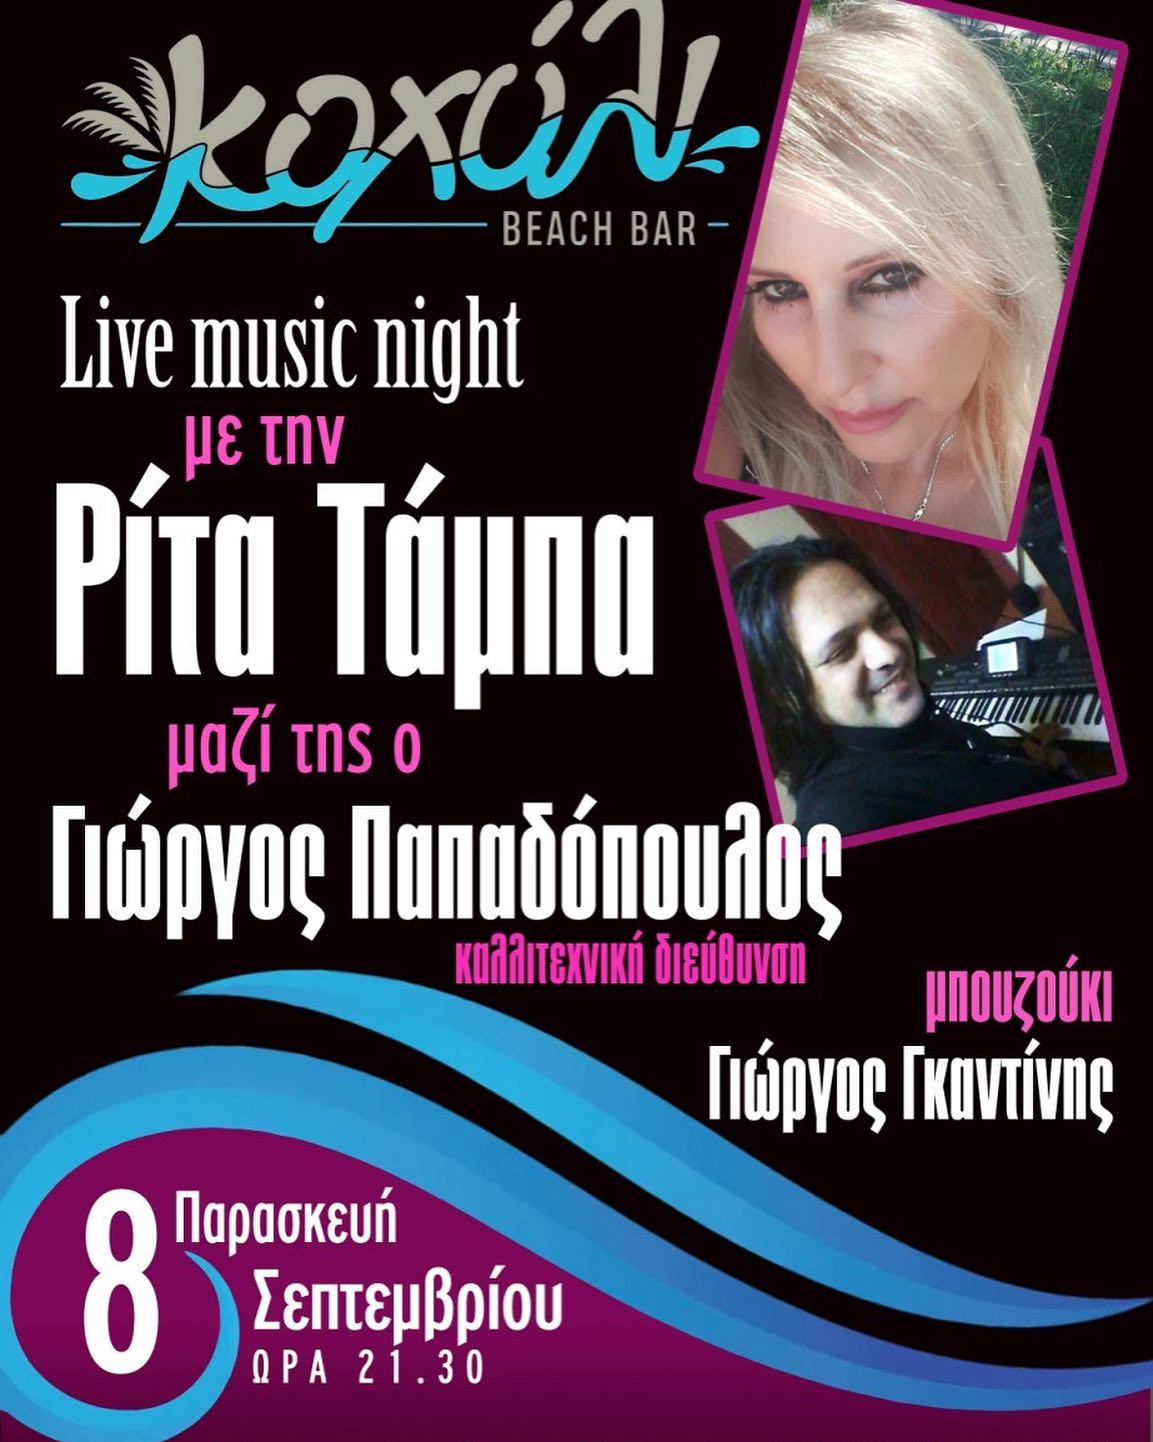 ΑΠΟΨΕ στο “Κοχύλι”: Live music night με Ρίτα Τάμπα και Γιώργο Παπαδόπουλο (21:30)